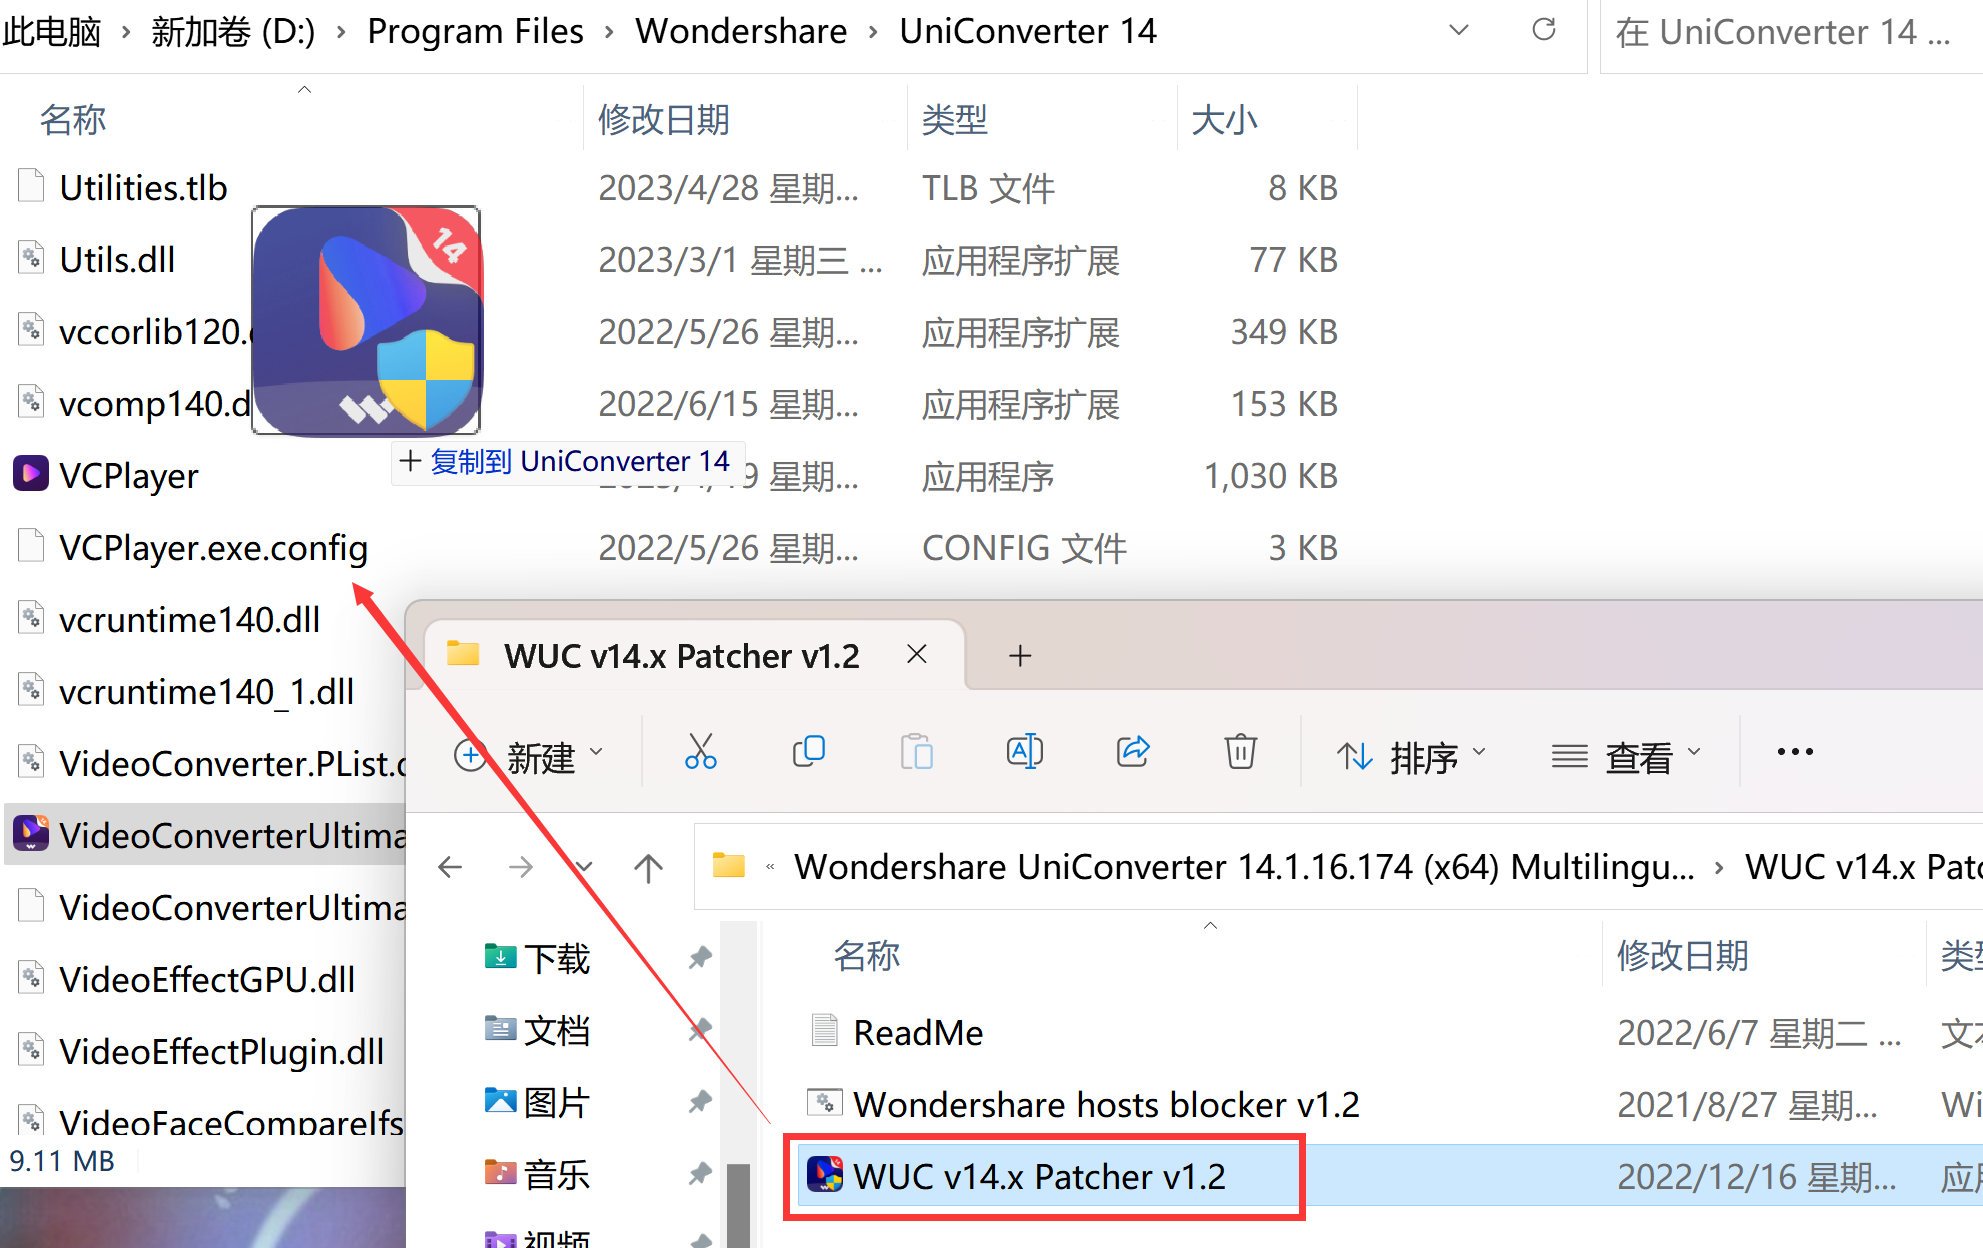 Wondershare UniConverter(全能音频格式转换工具) v15.0.9.15中文永久版下载